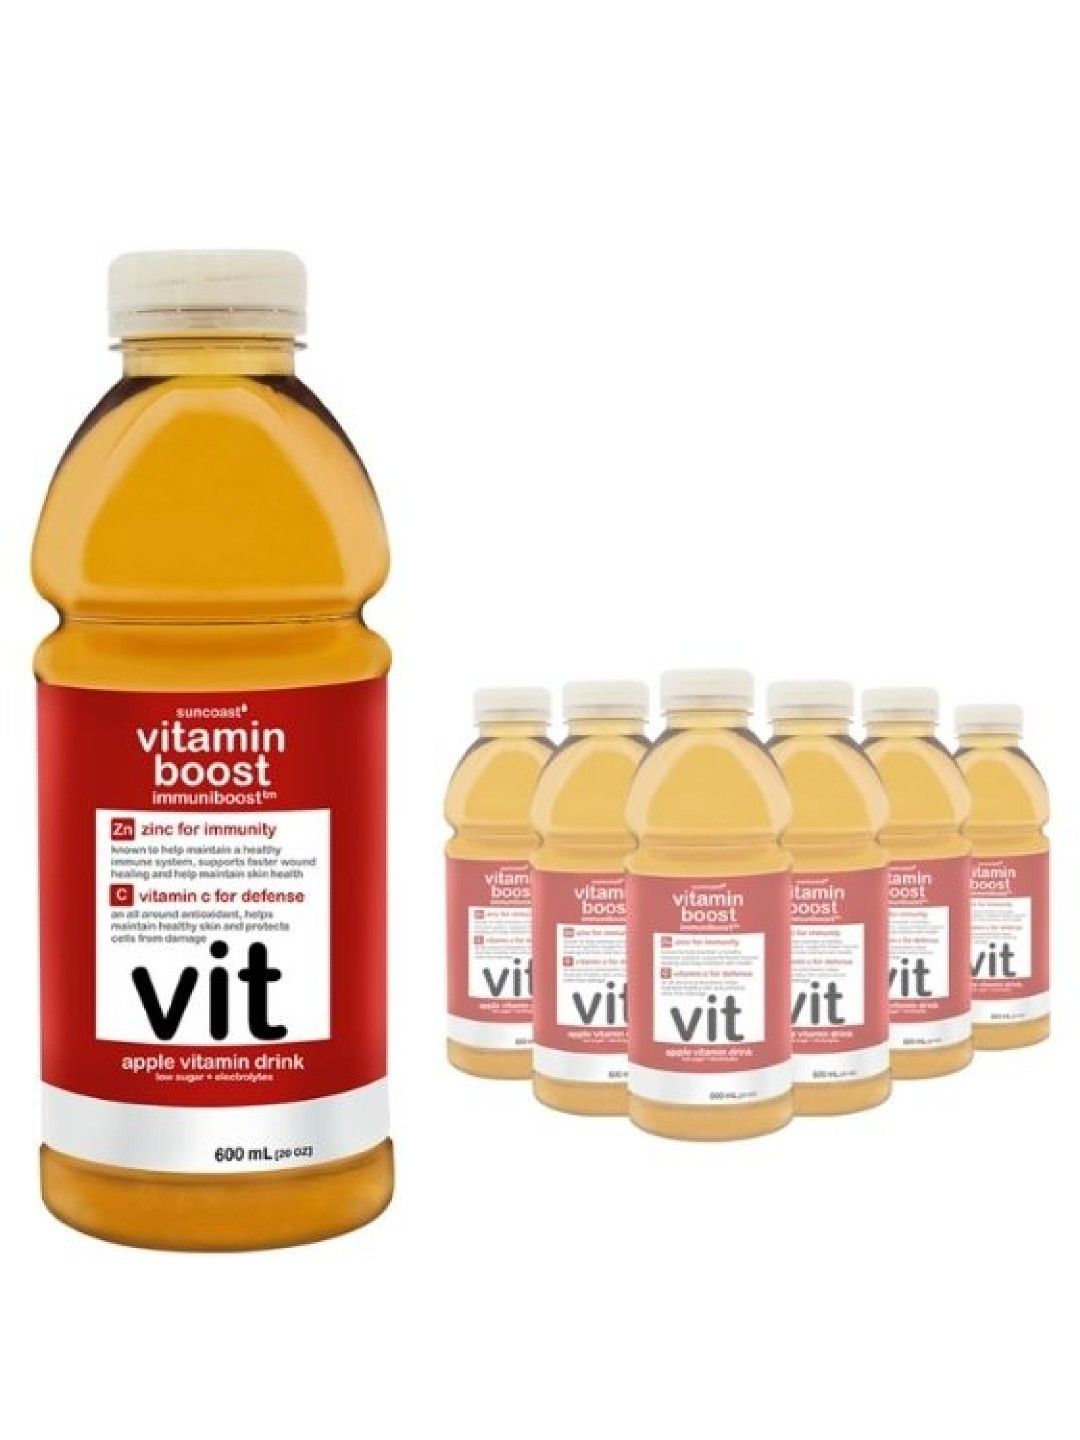 Vitamin Boost Immuniboost Apple Vitamin Drink (600ml) (6-pack)